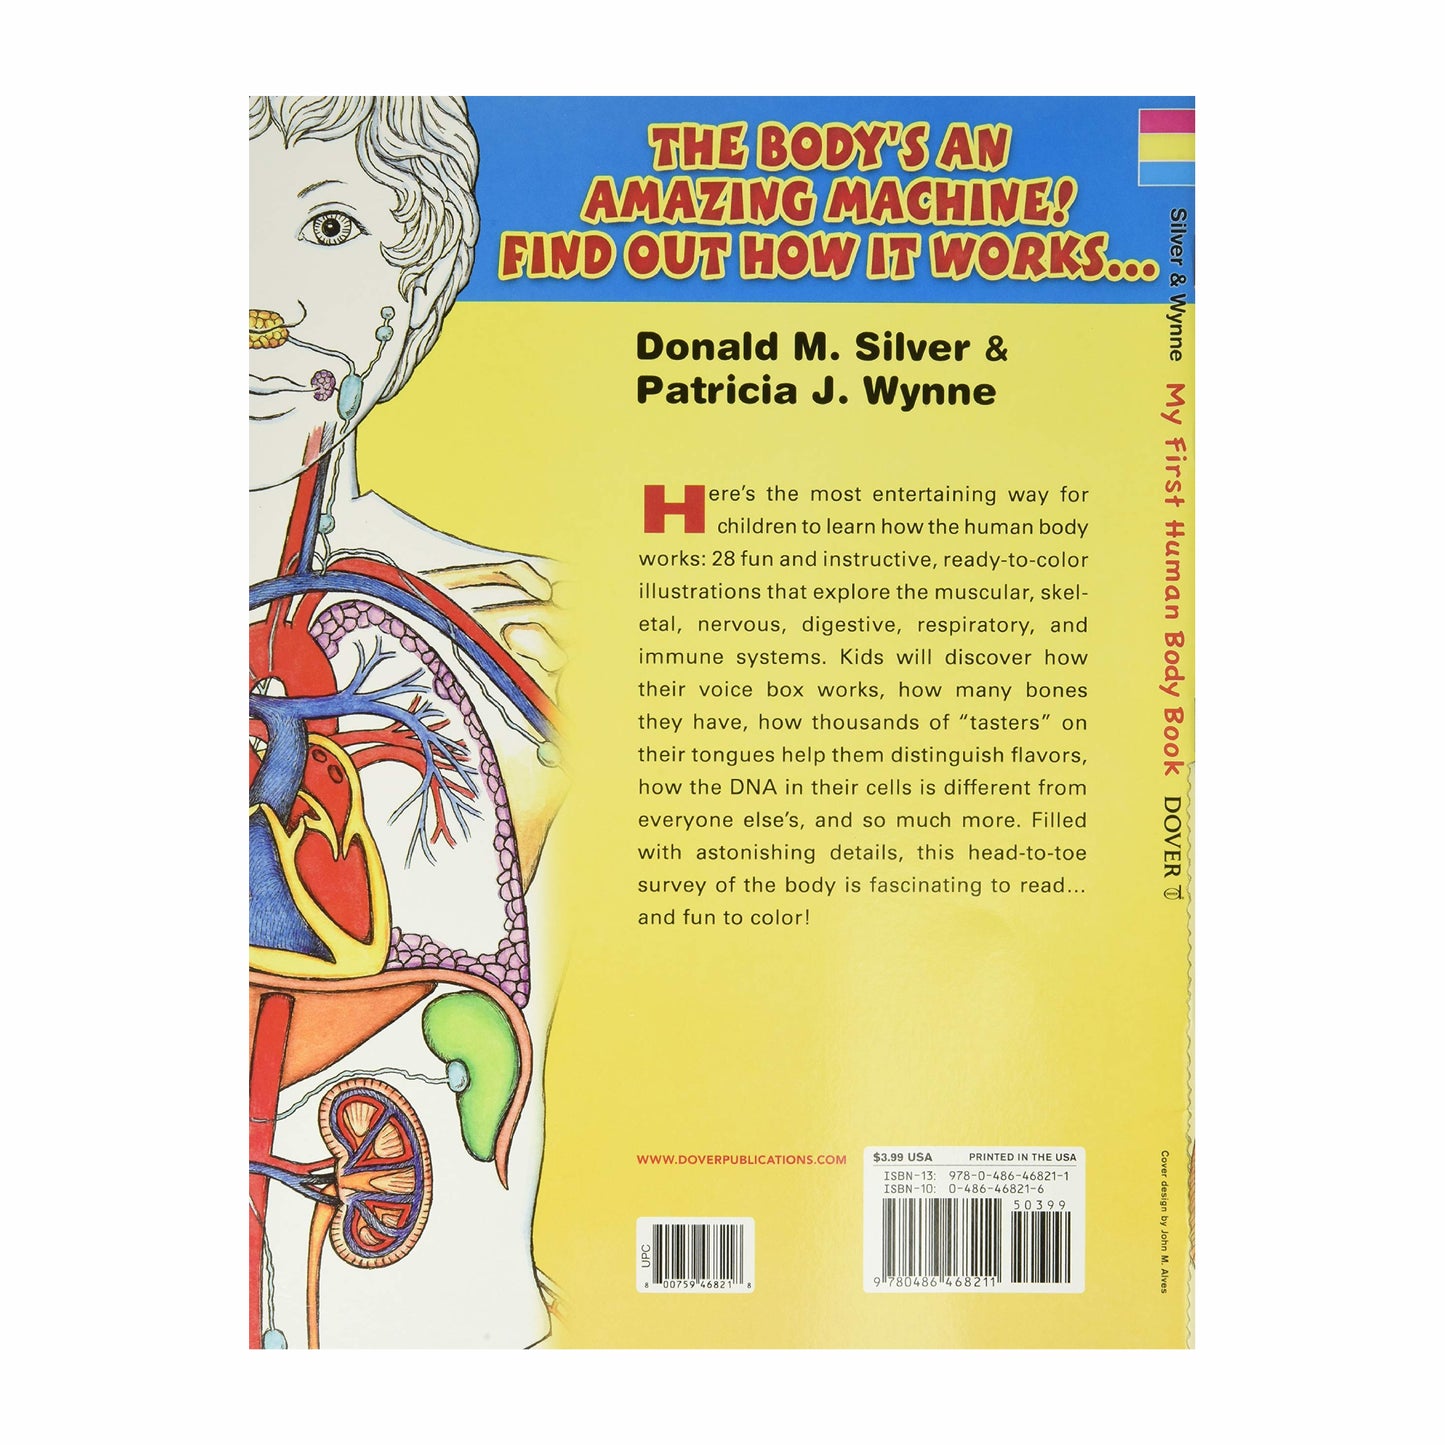 Mon premier livre sur le corps humain